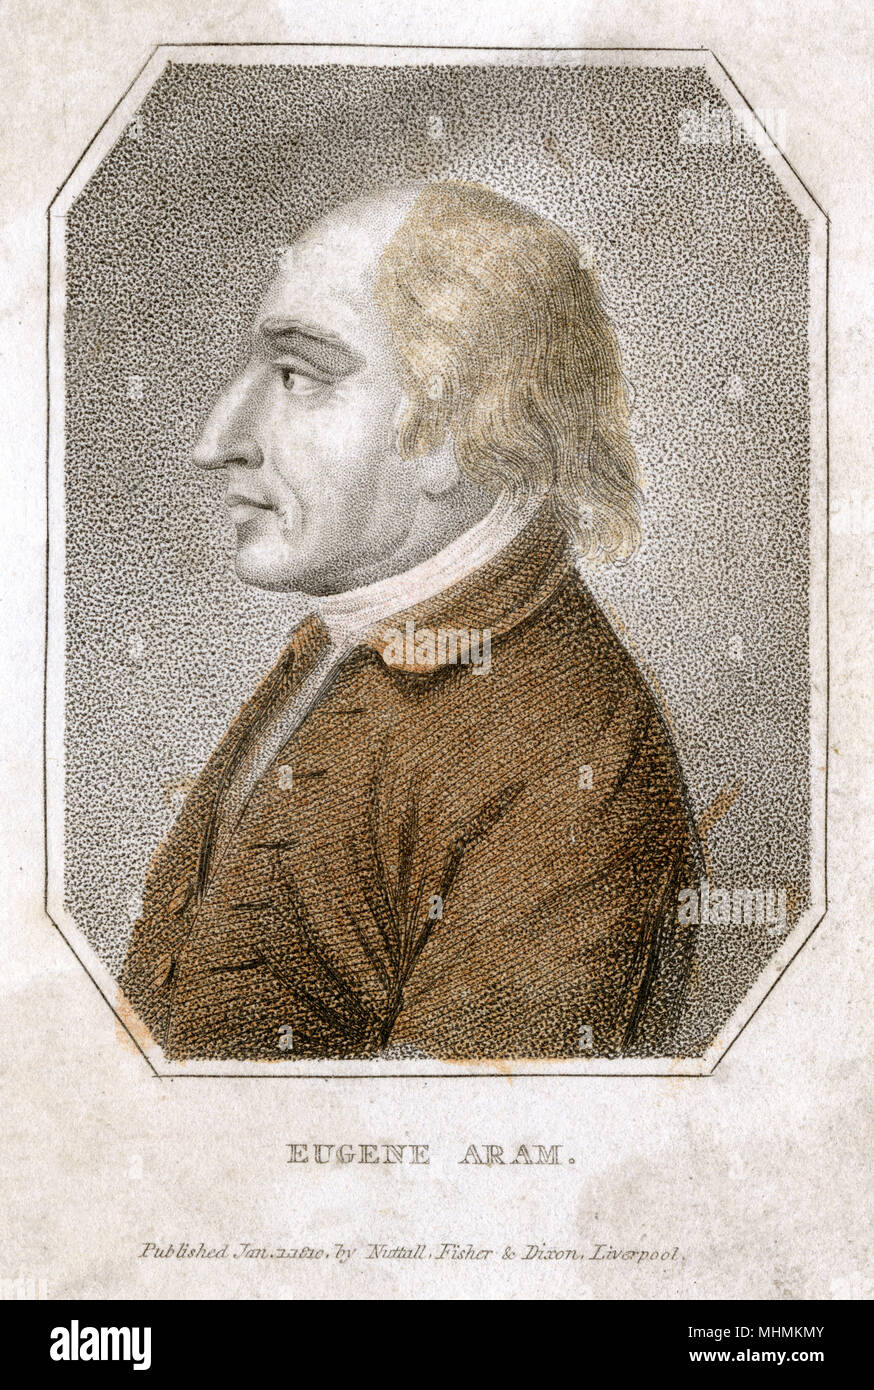 Eugene Aram, murderer        Date: 1704 - 1759 Stock Photo